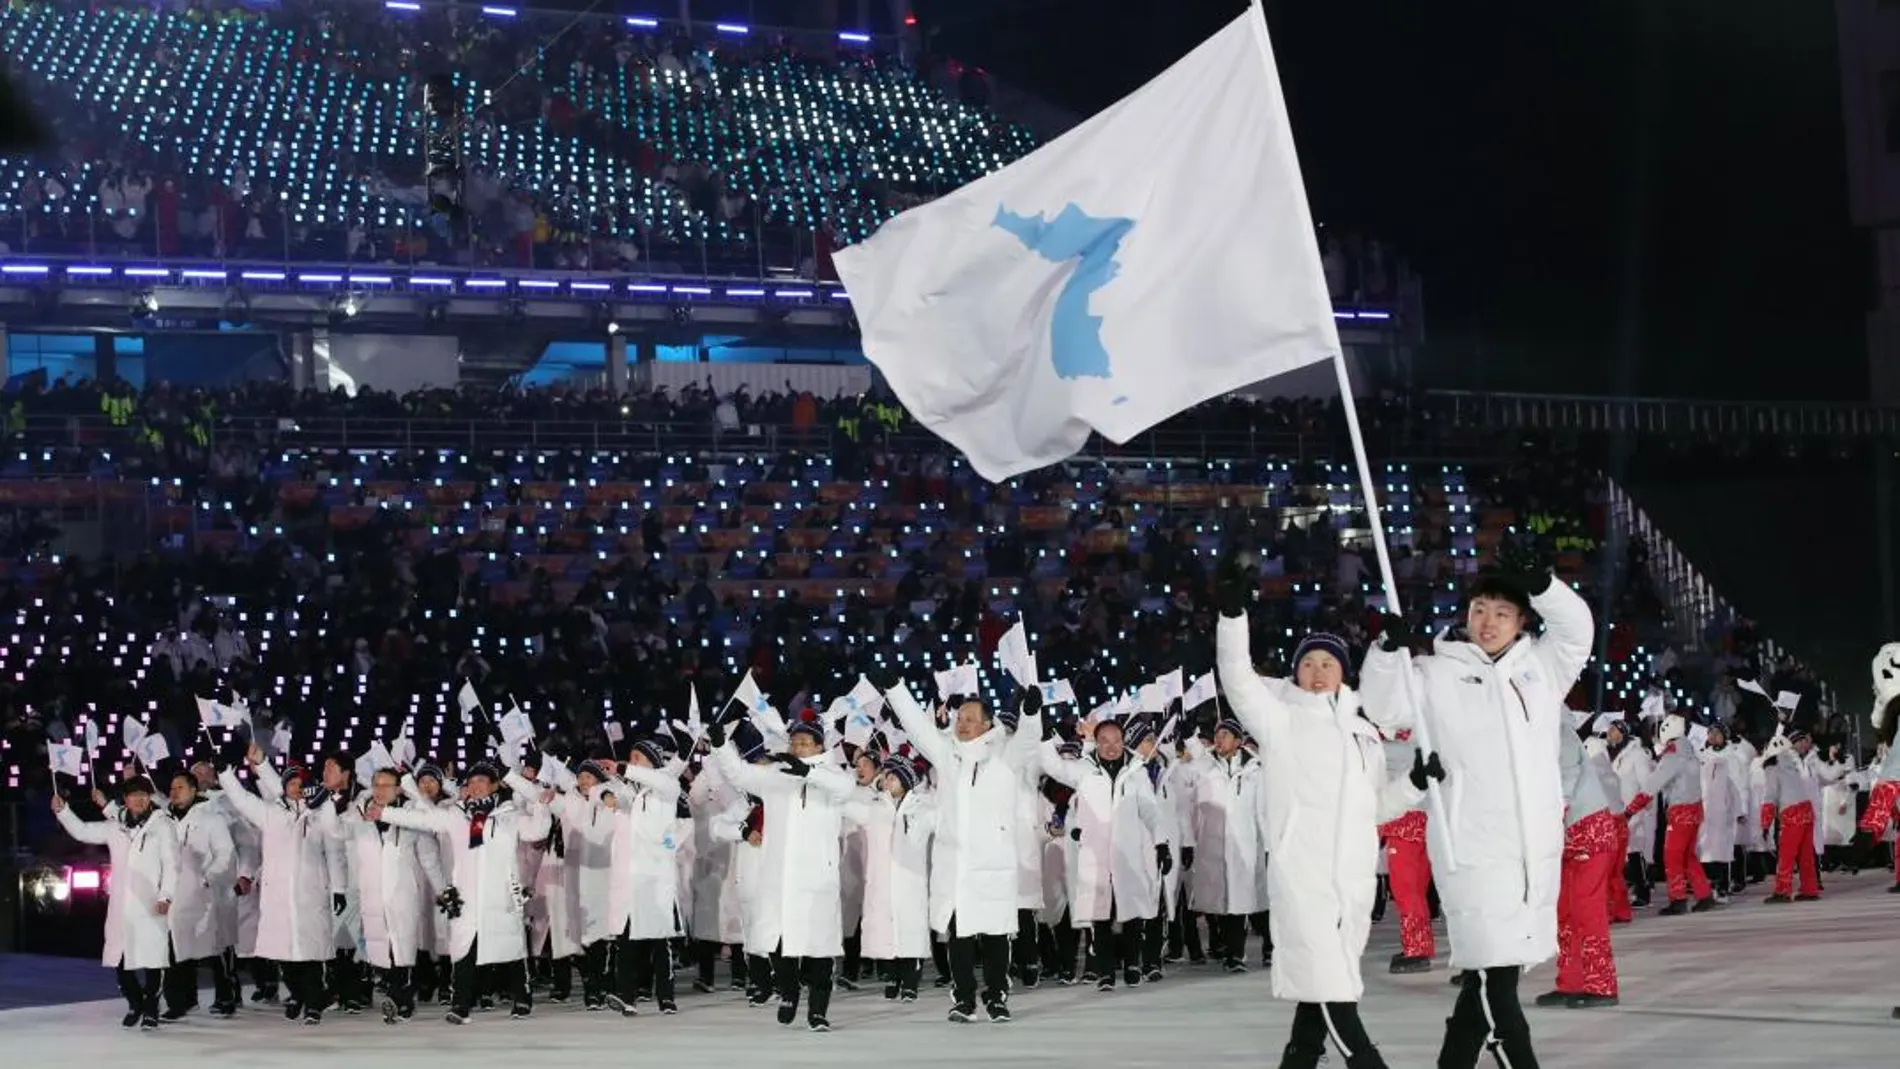 Imágenes de la ceremonia de apertura de los Juegos Olímpicos de Invierno 2018 de Pyeongchang (Corea del Sur), primer acontecimiento que atacó el malware Olympic Destroyer